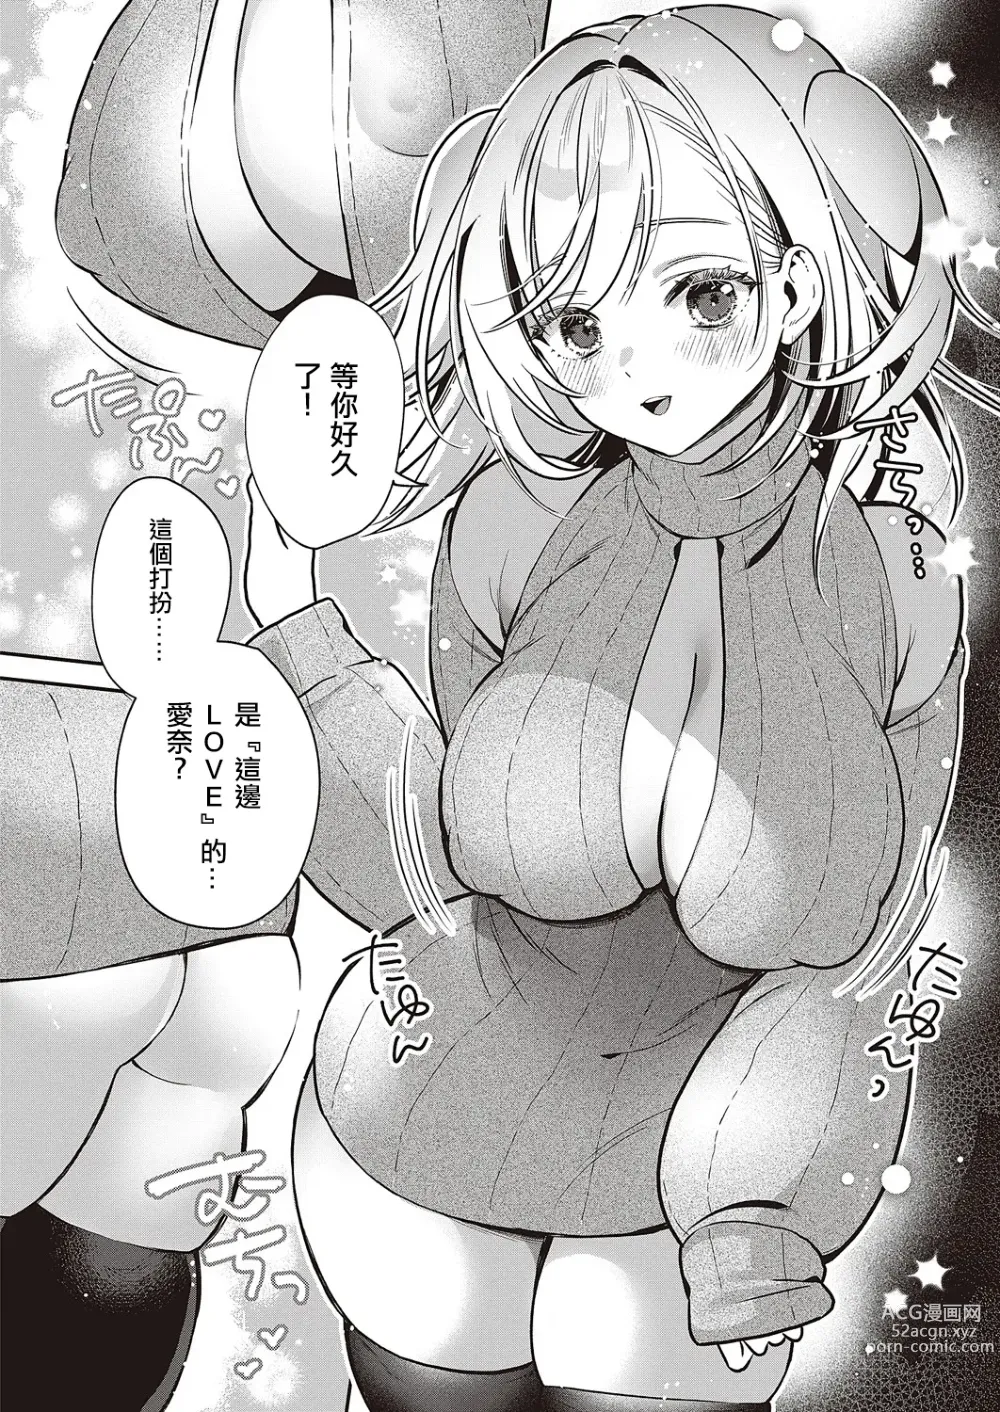 Page 8 of manga Ganbaru Kanojo wa Okirai desu ka?